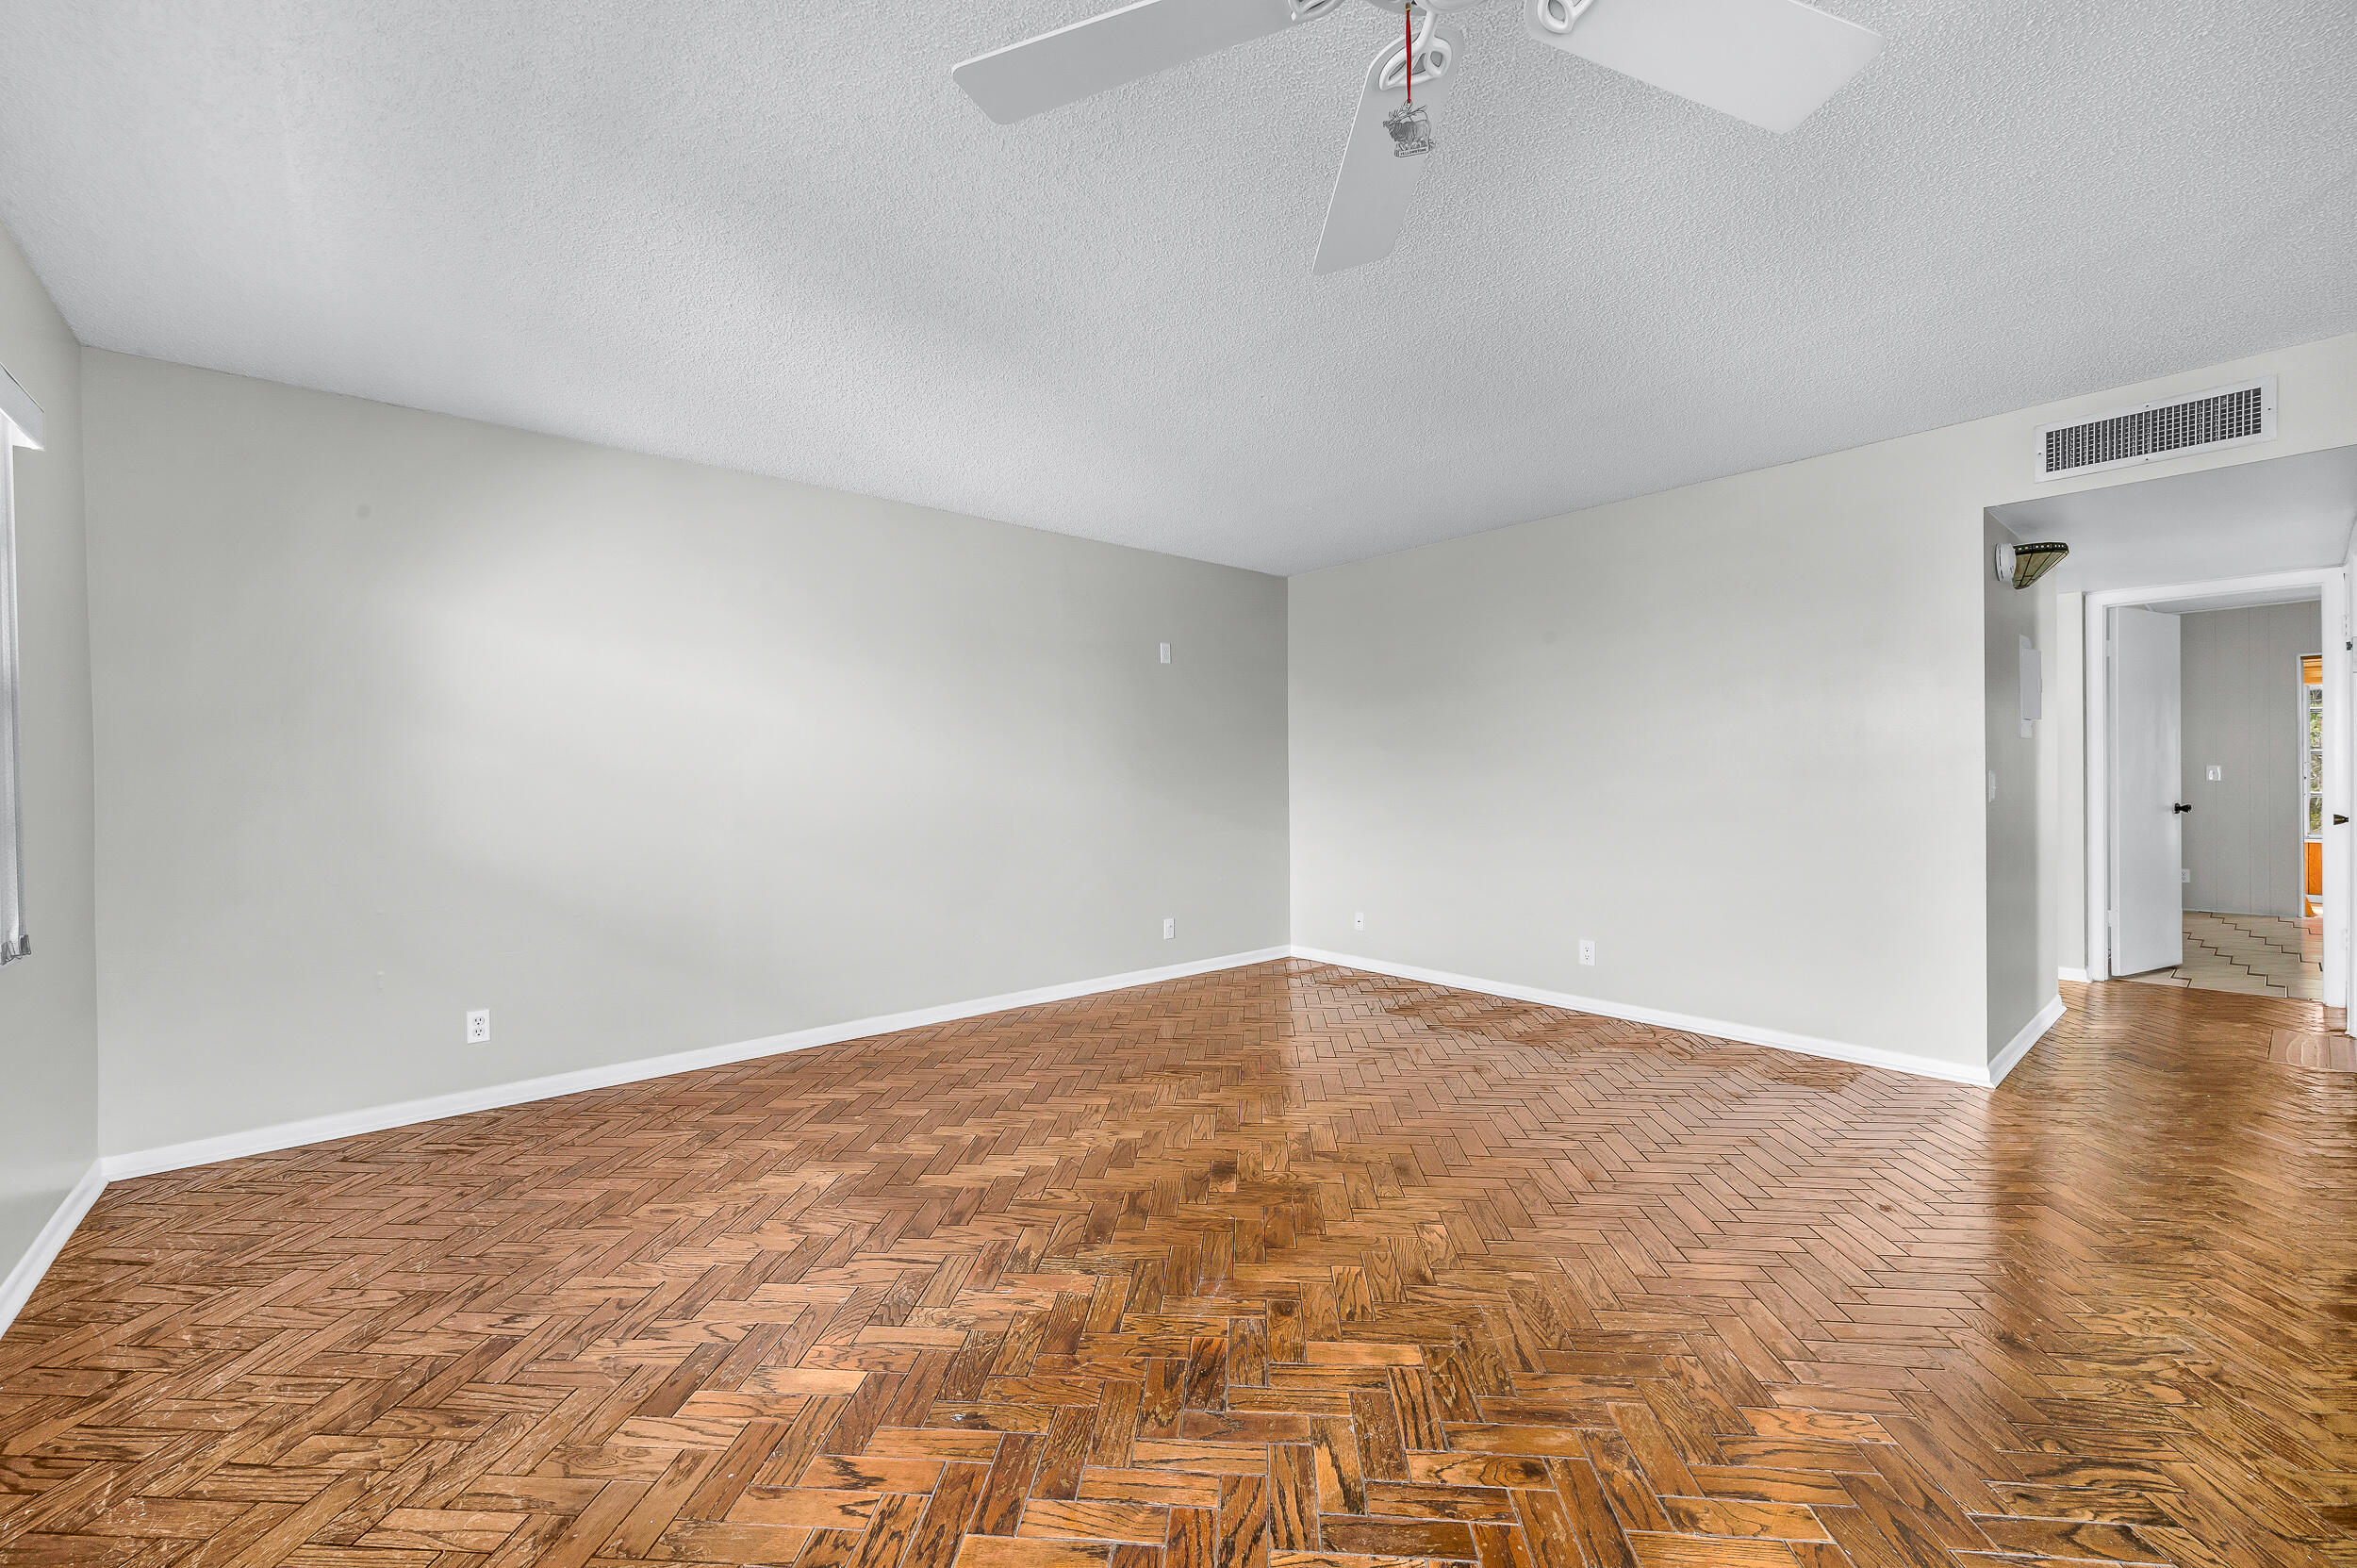 wooden floor in a room